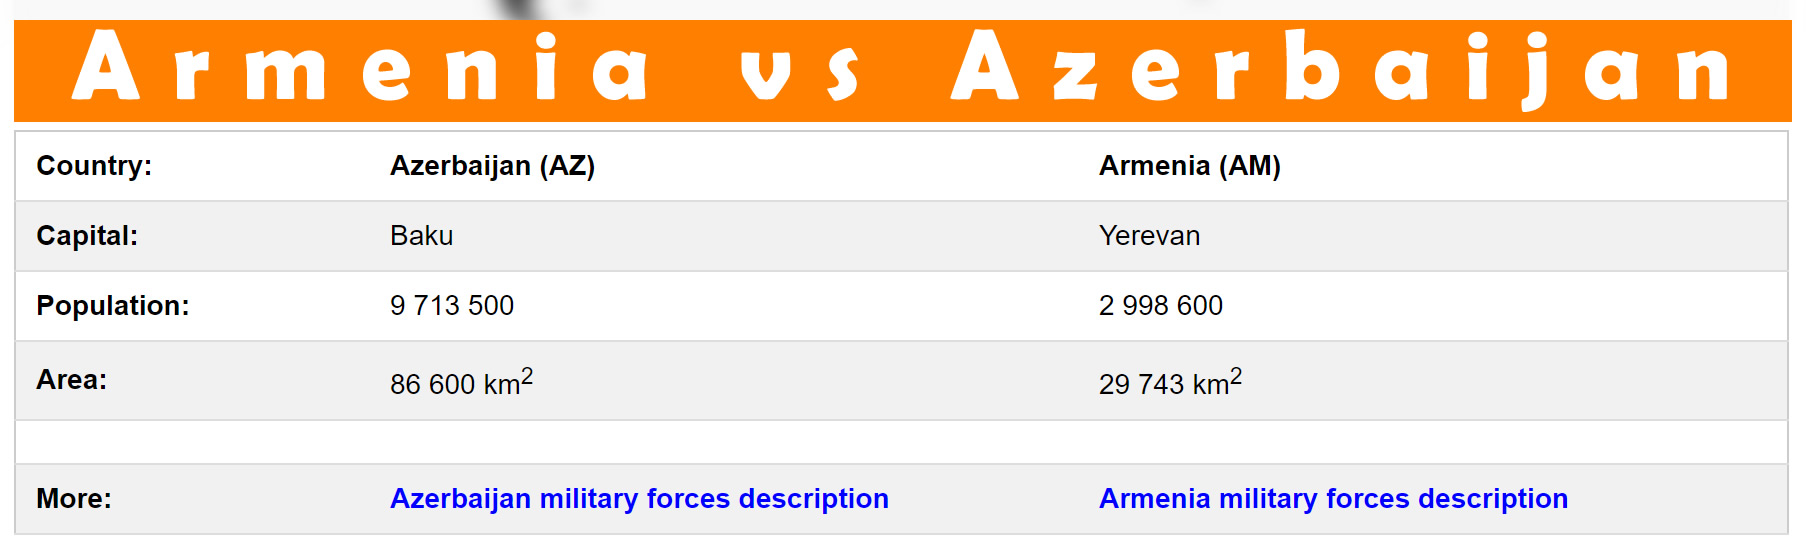 Armenia vs Azerbaijan Population Comparison